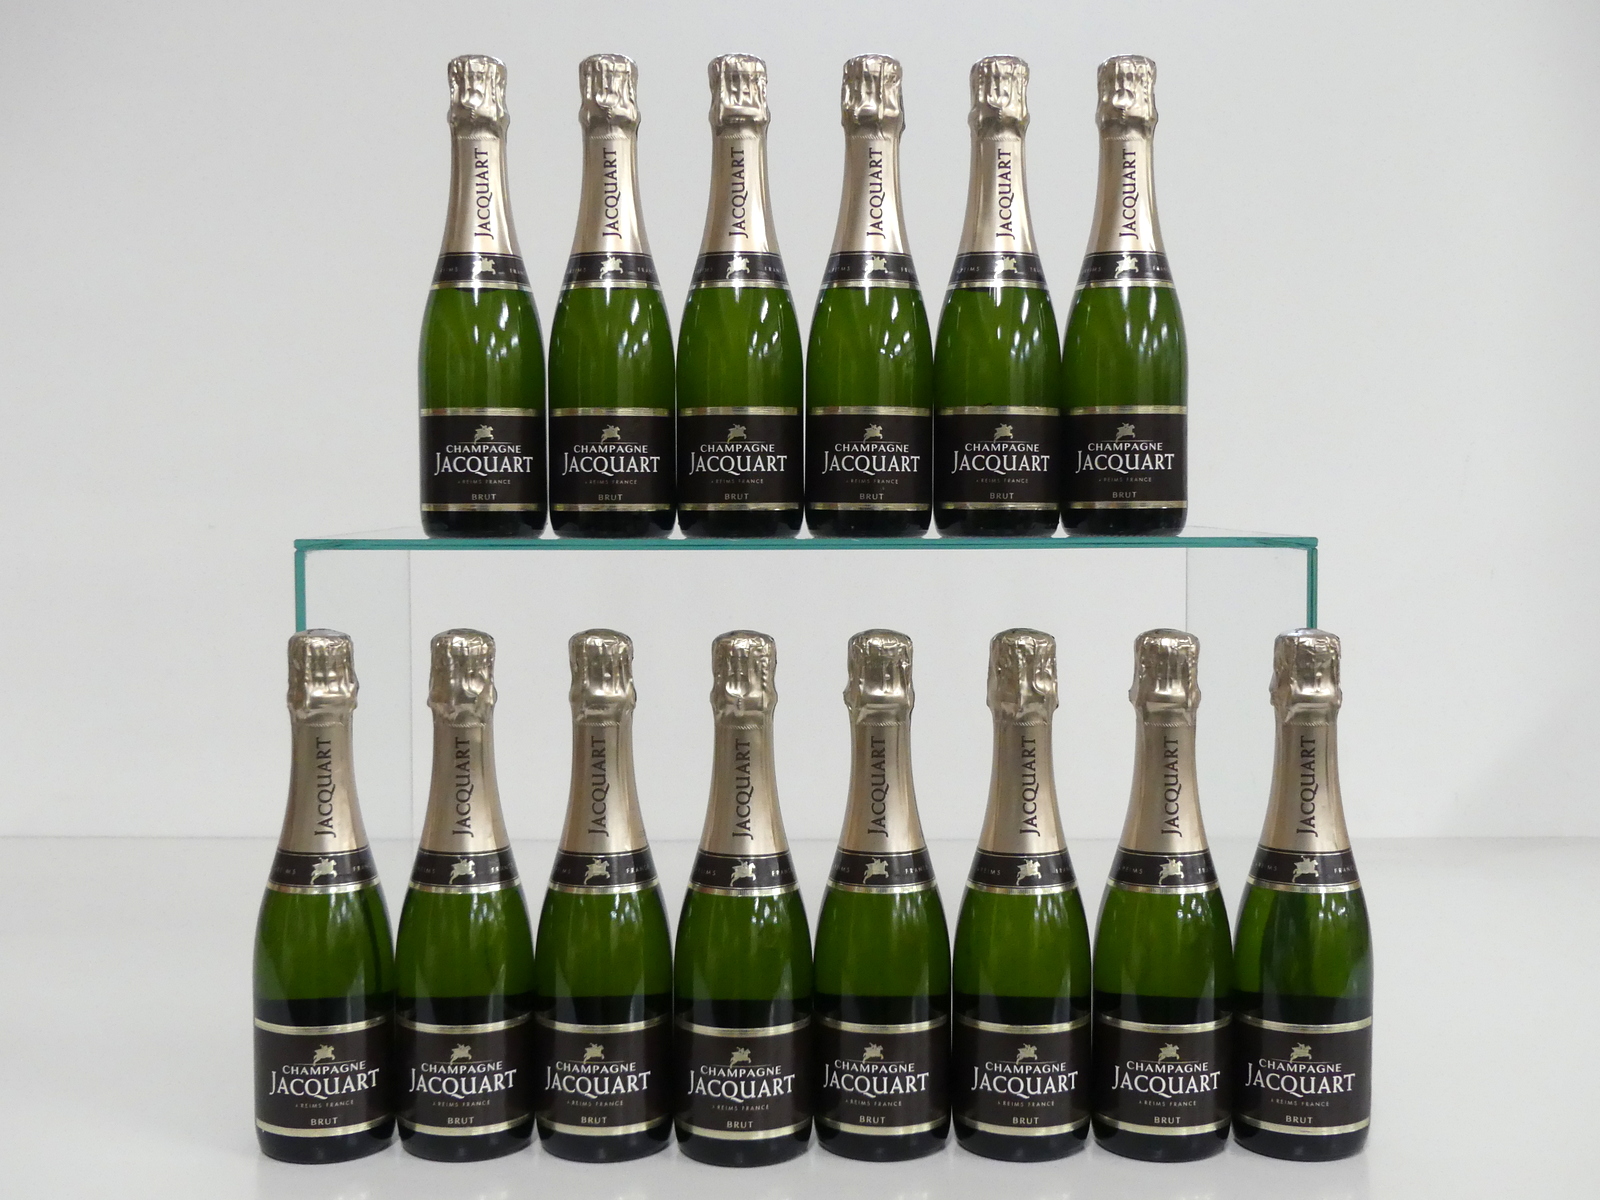 14 hf bts Jacquart Brut Champagne NV oc (12 hf bt)